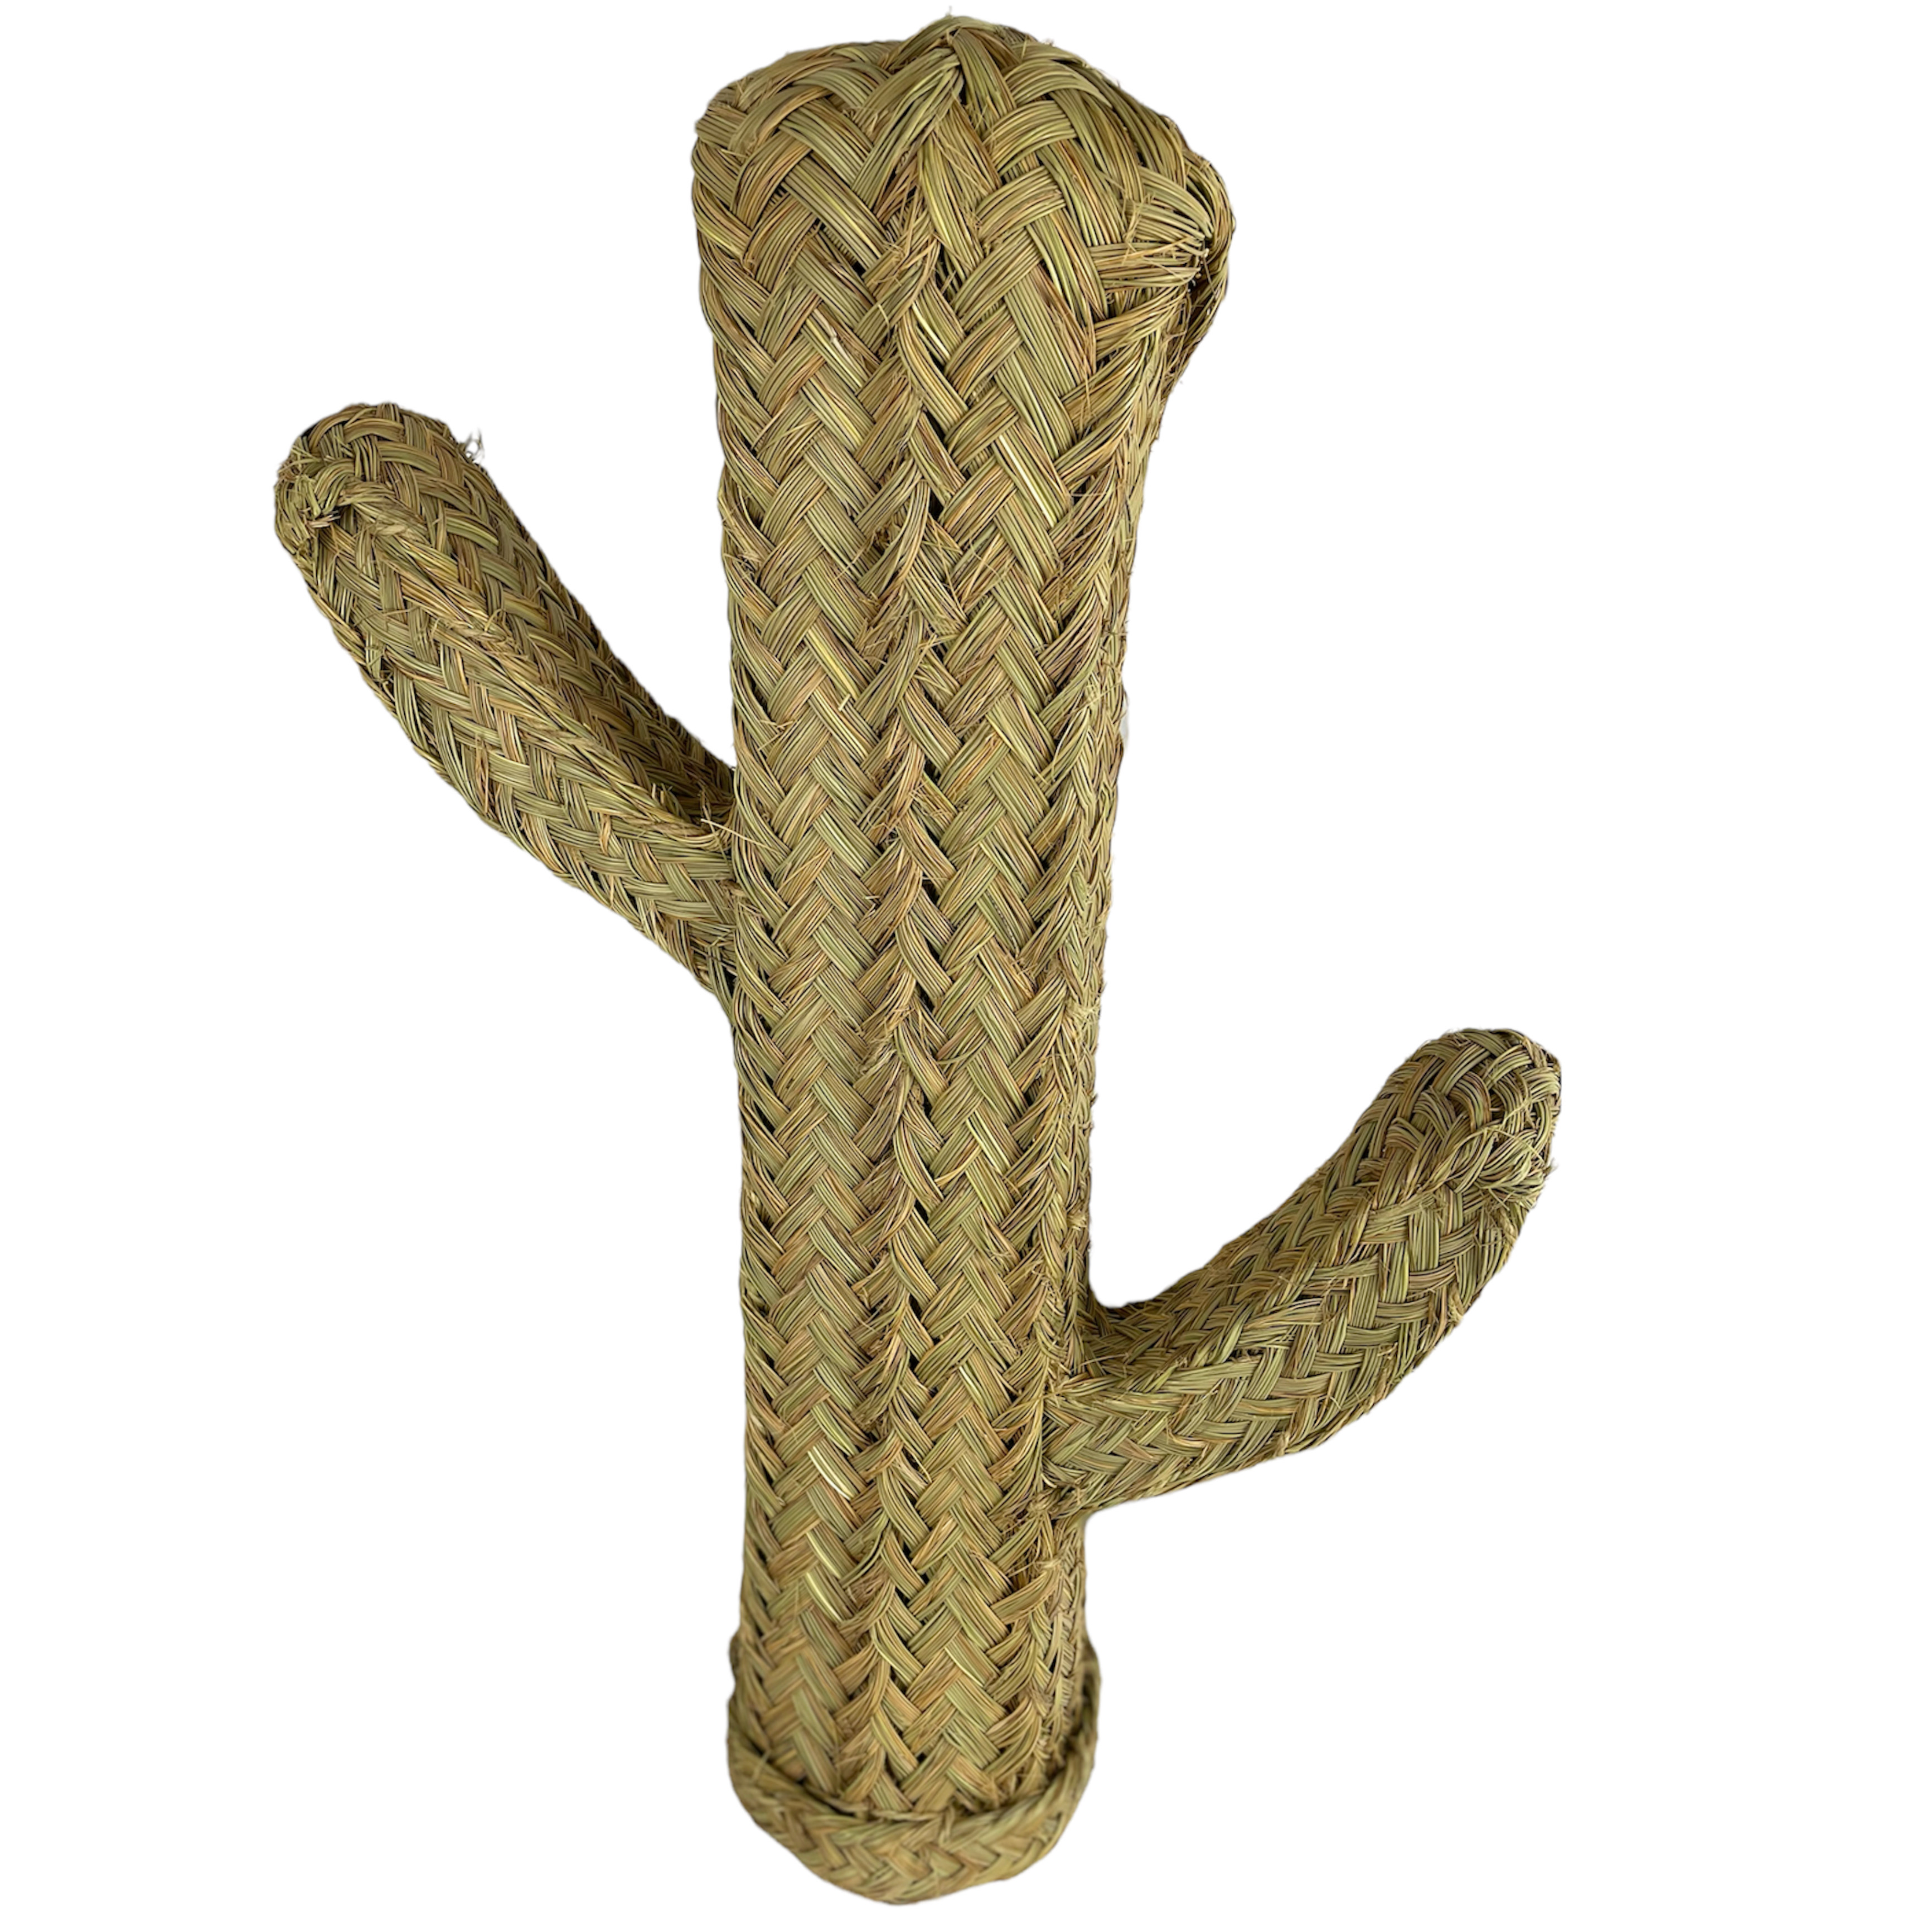 33050-cactus-decorativo-fibra-natural.jpeg